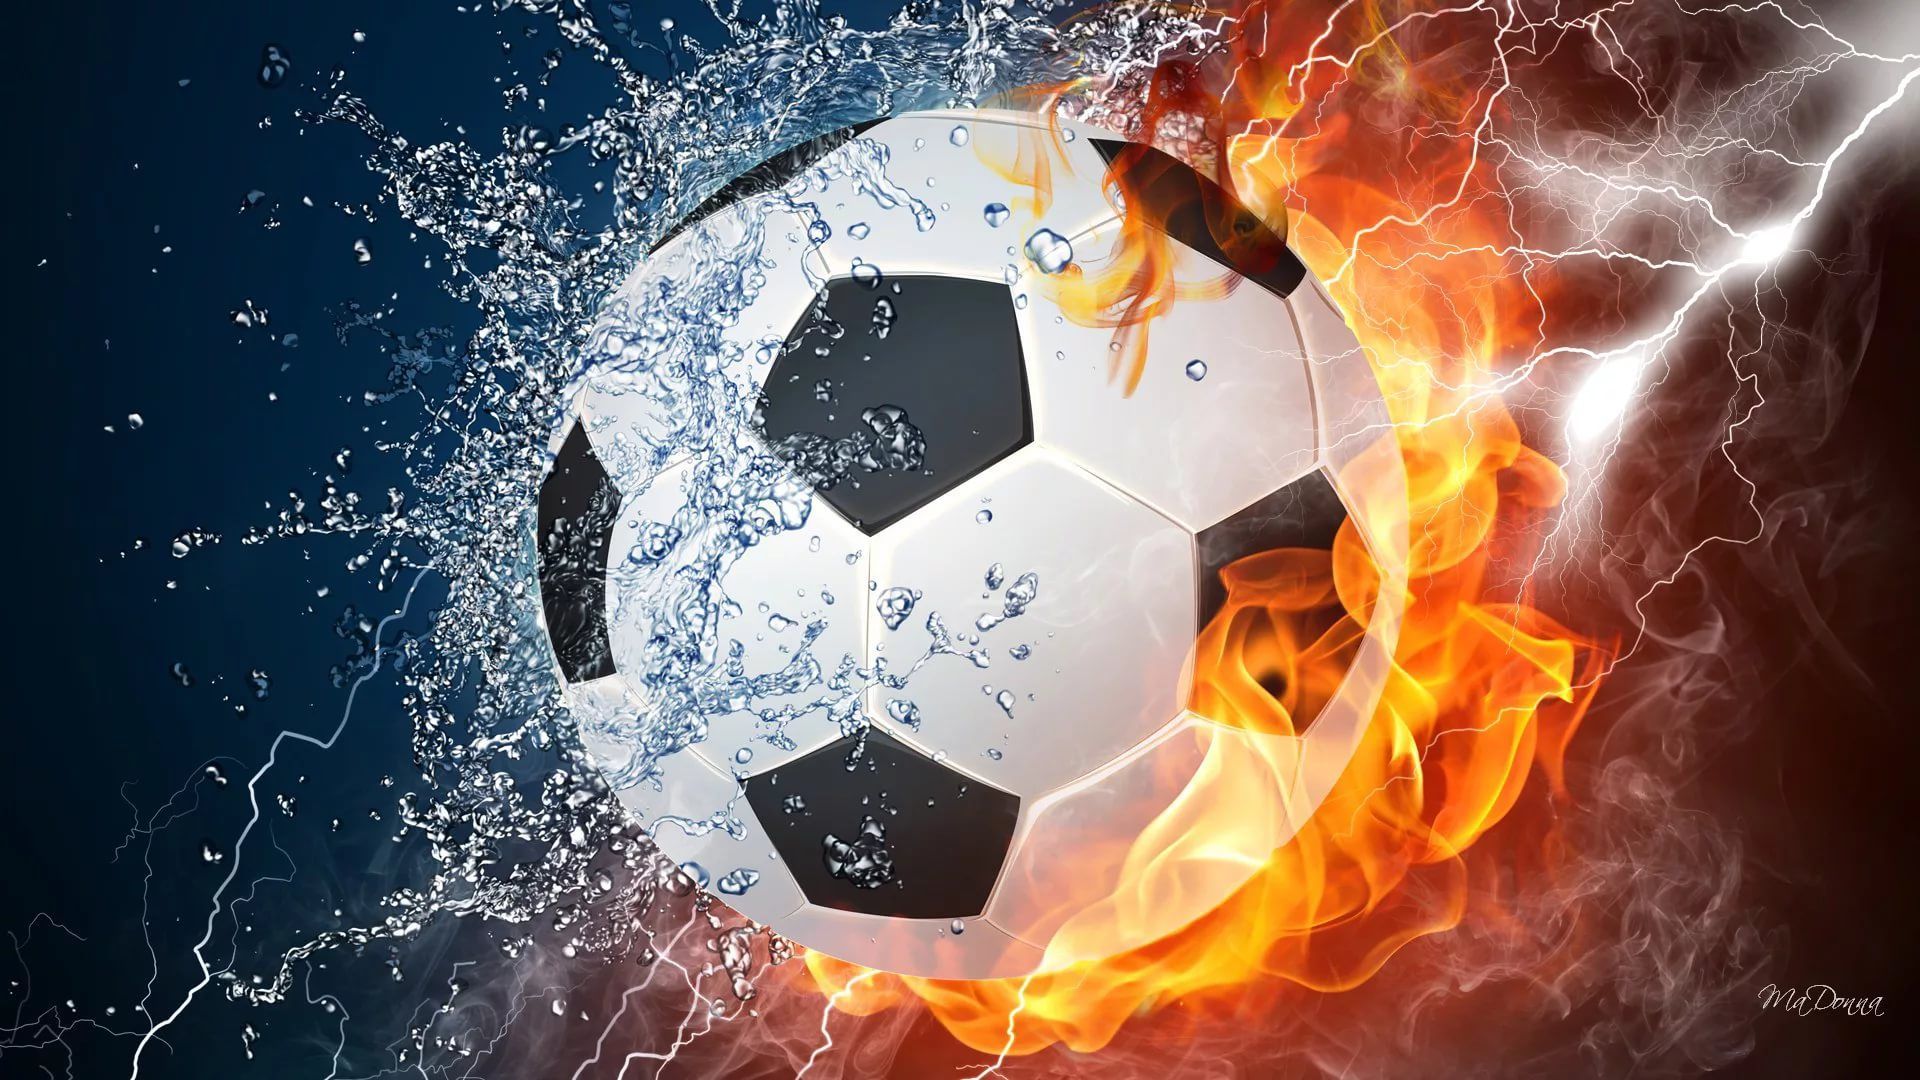 Soccer Ball On Fire